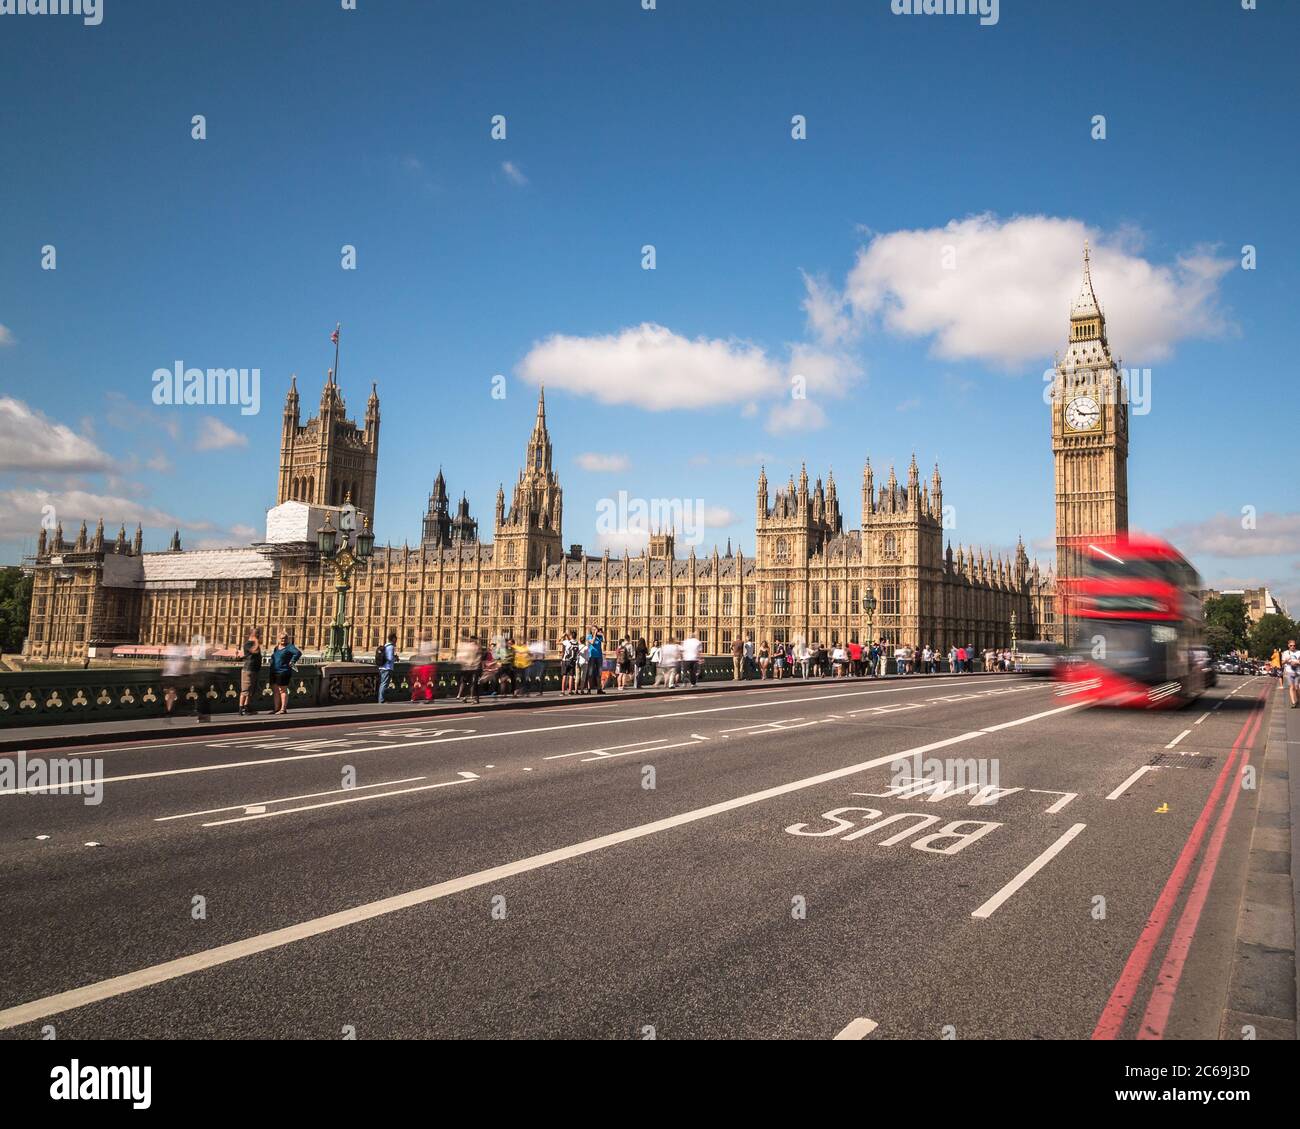 LONDRES, Royaume-Uni - 21 JUILLET 2015 : Big Ben à Westminster avec les bus rouges de Londres. Beaucoup de gens peuvent être vus. Banque D'Images